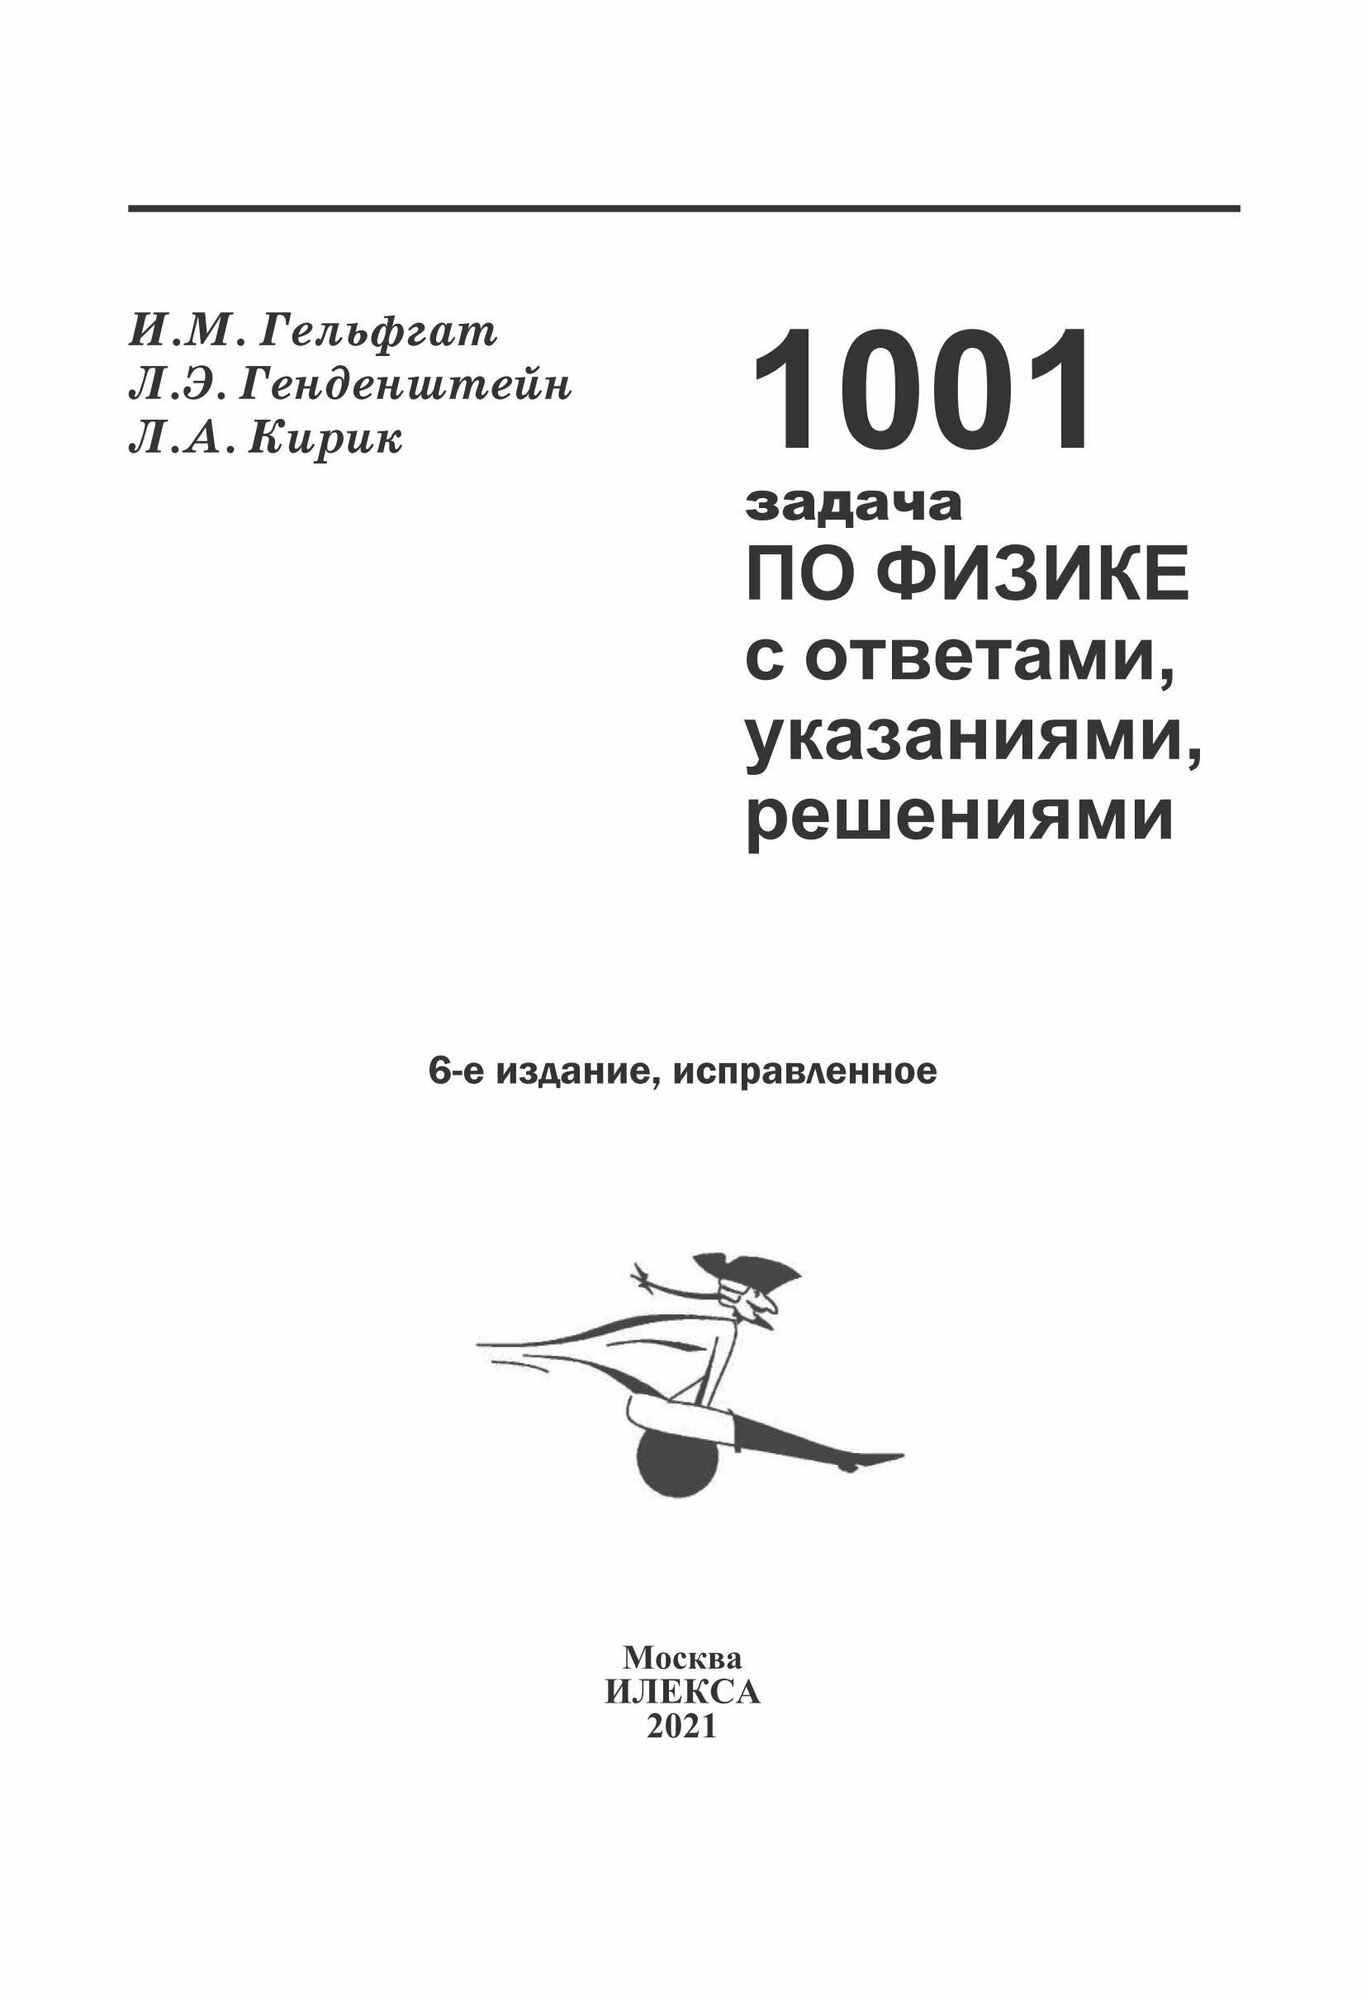 1001 задача по физике с ответами, указаниями, решениями - фото №3